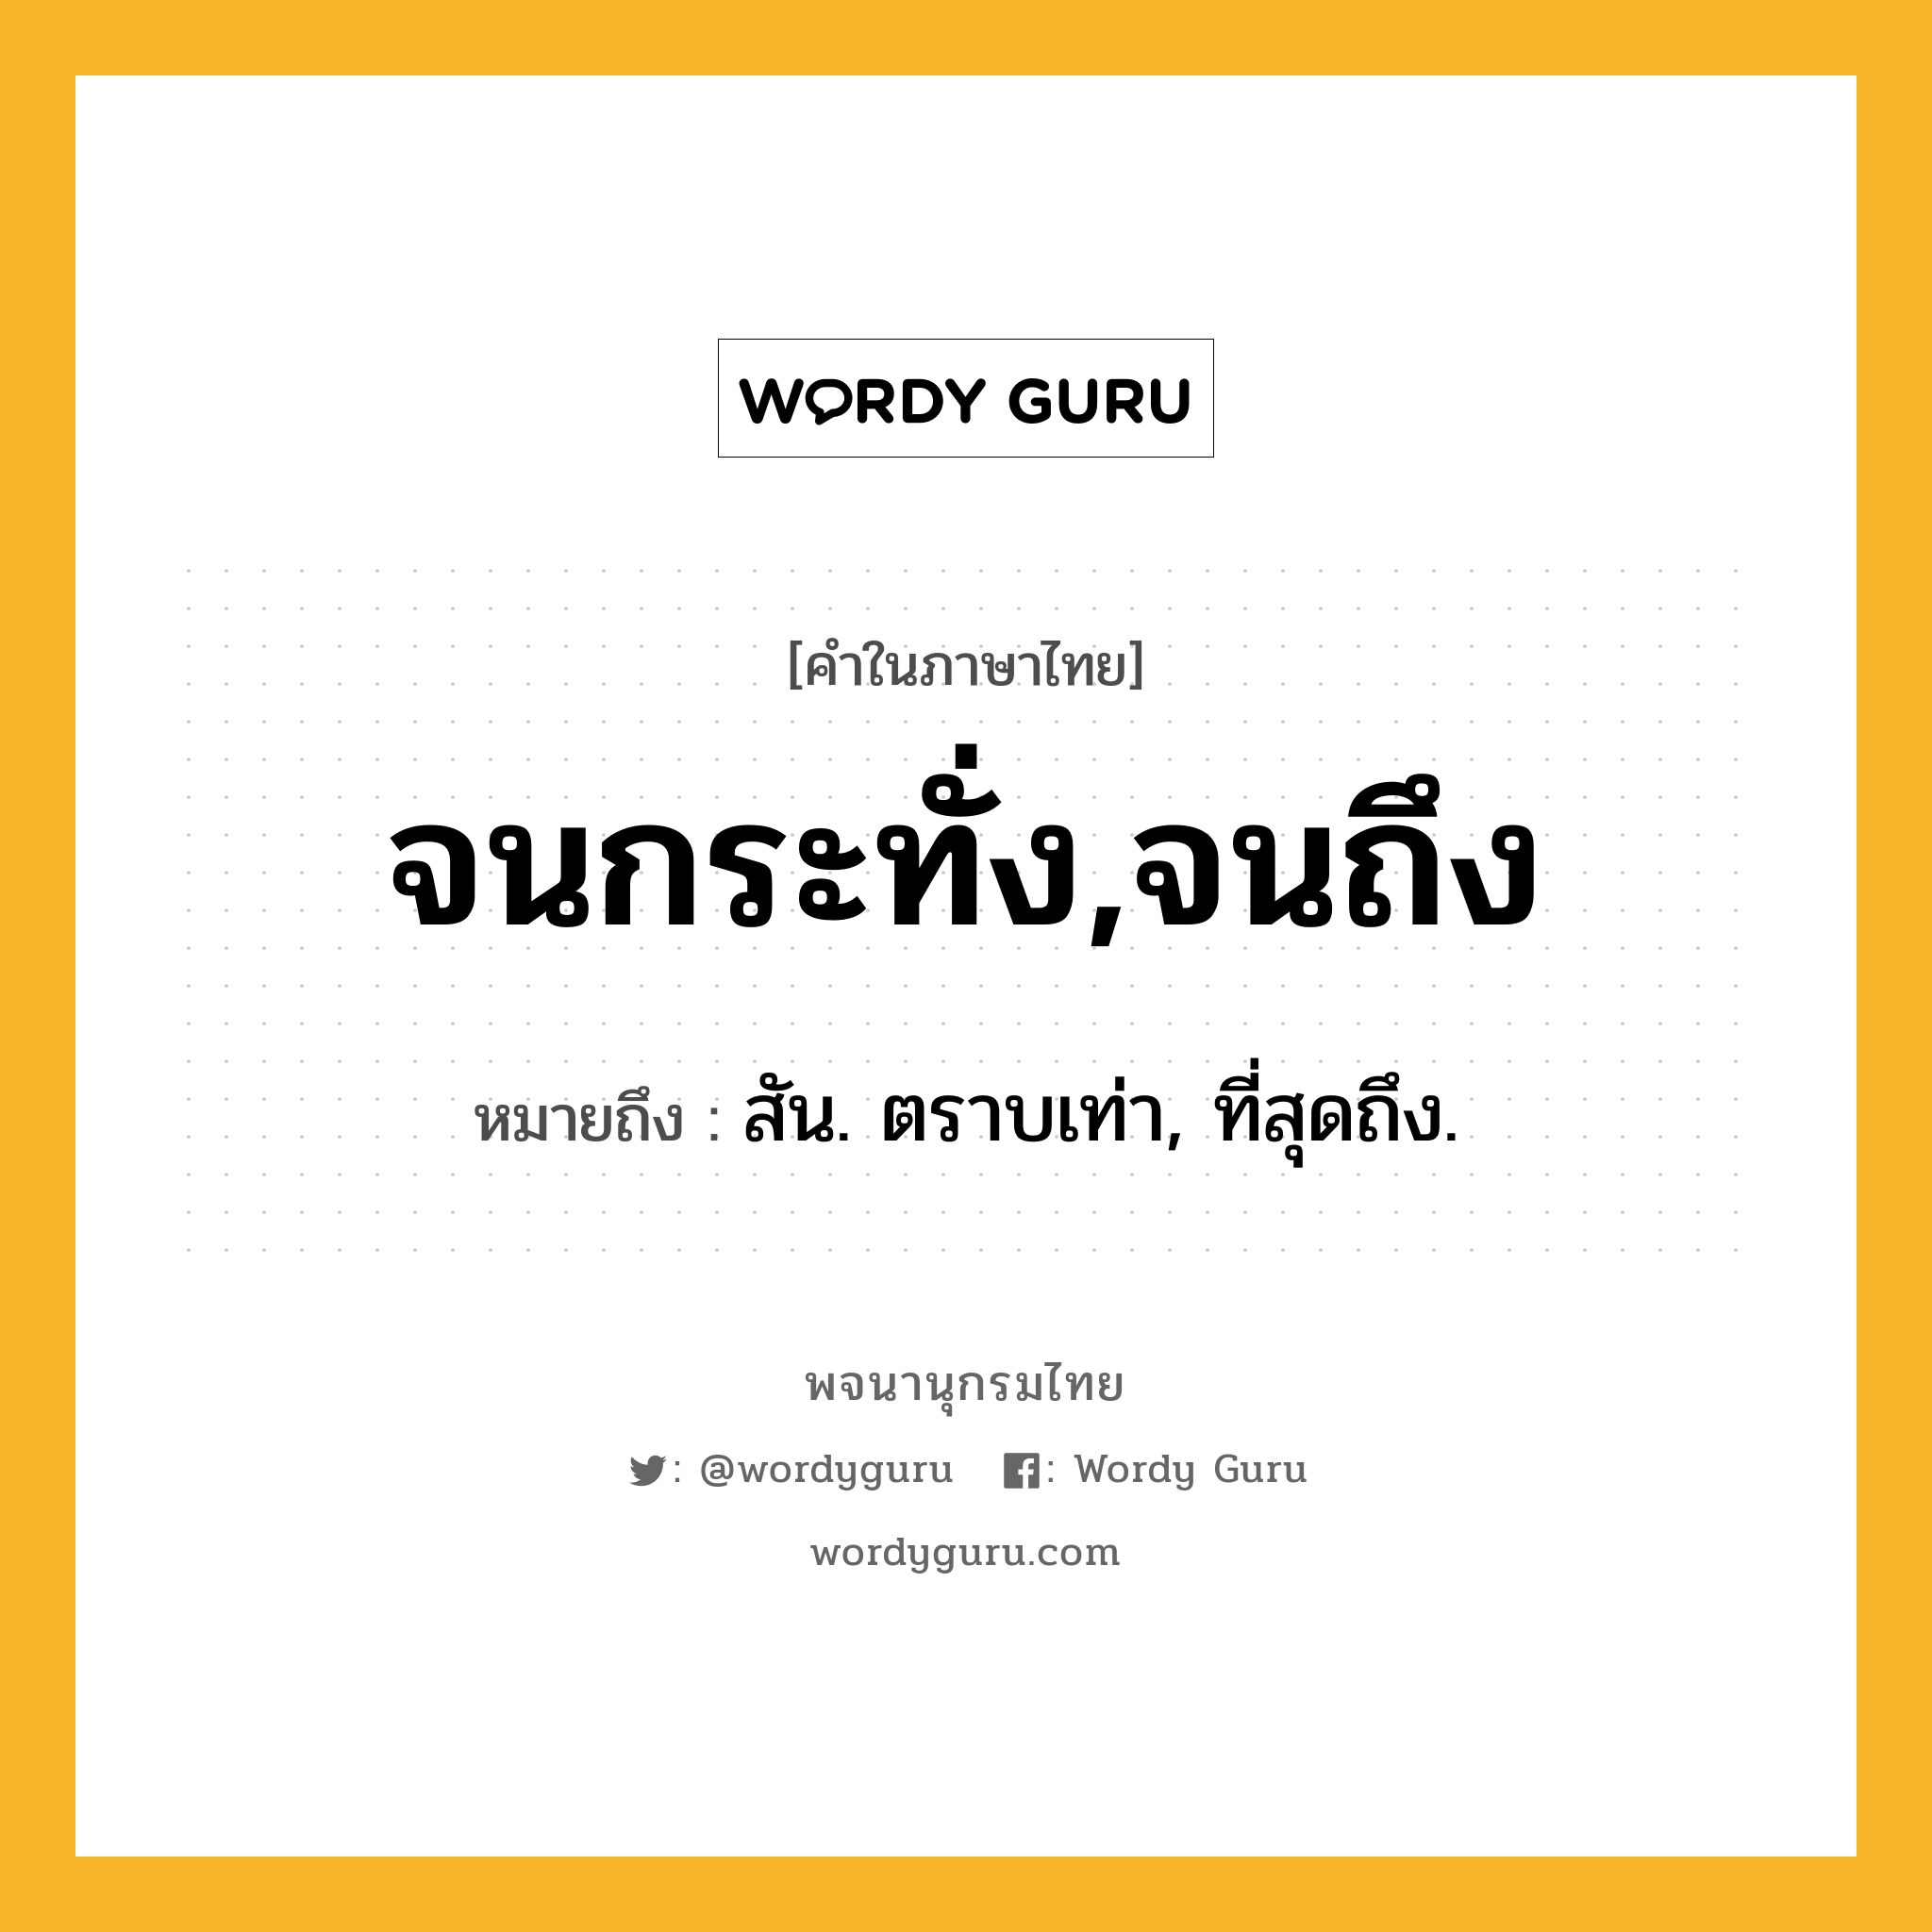 จนกระทั่ง,จนถึง ความหมาย หมายถึงอะไร?, คำในภาษาไทย จนกระทั่ง,จนถึง หมายถึง สัน. ตราบเท่า, ที่สุดถึง.